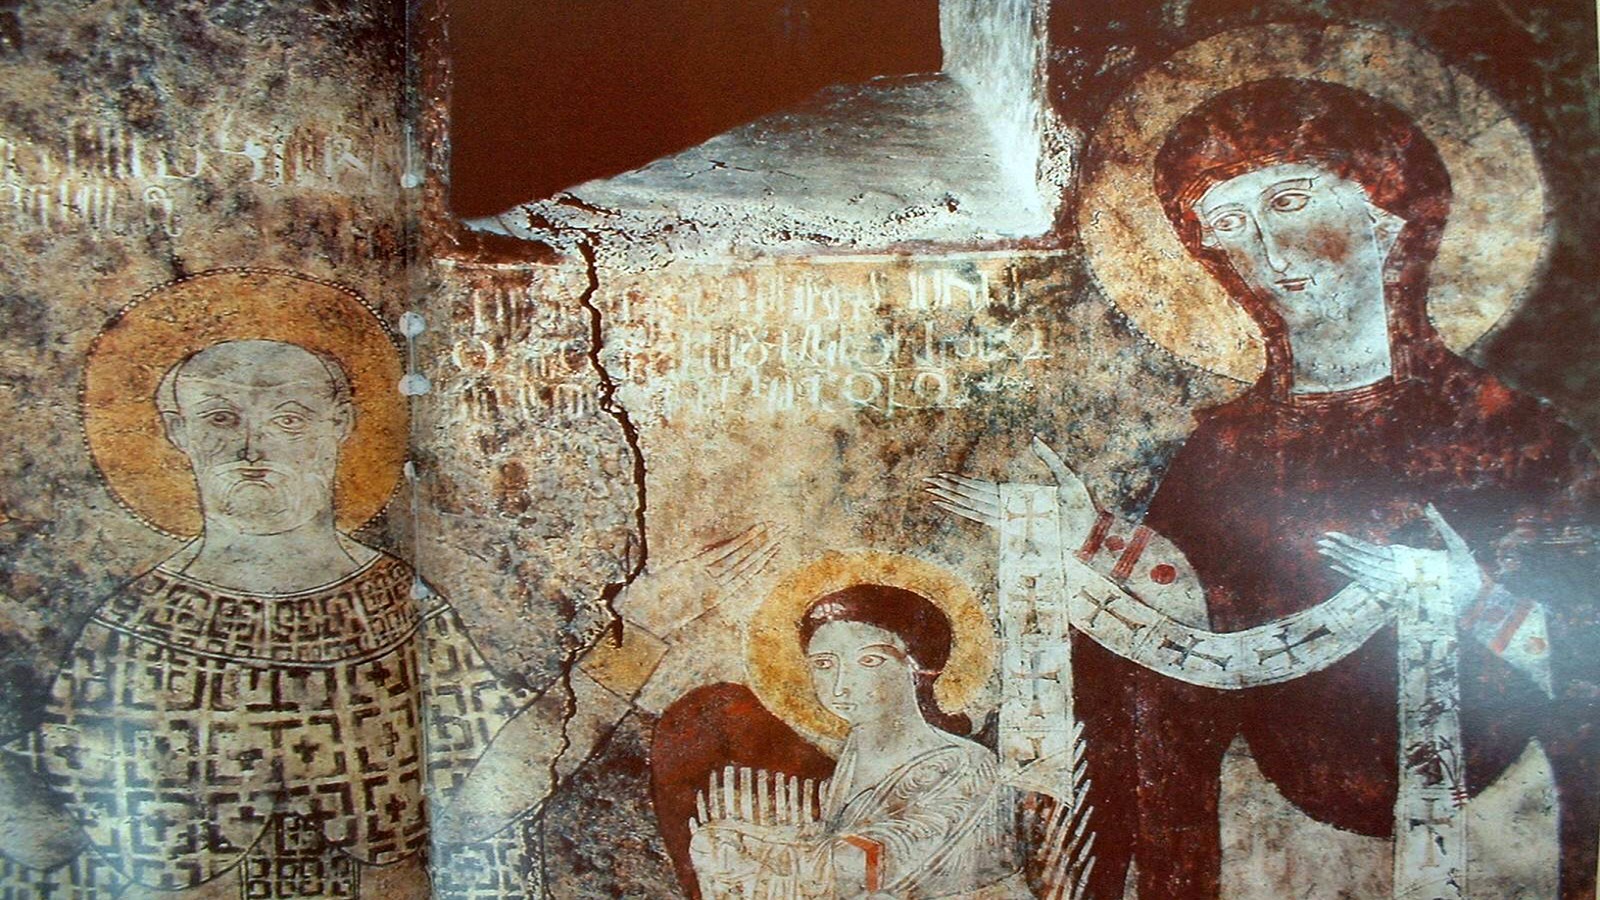  السيدة العذراء والقديس نيقولاوس، جدارية من كنيسة دير داديفانك